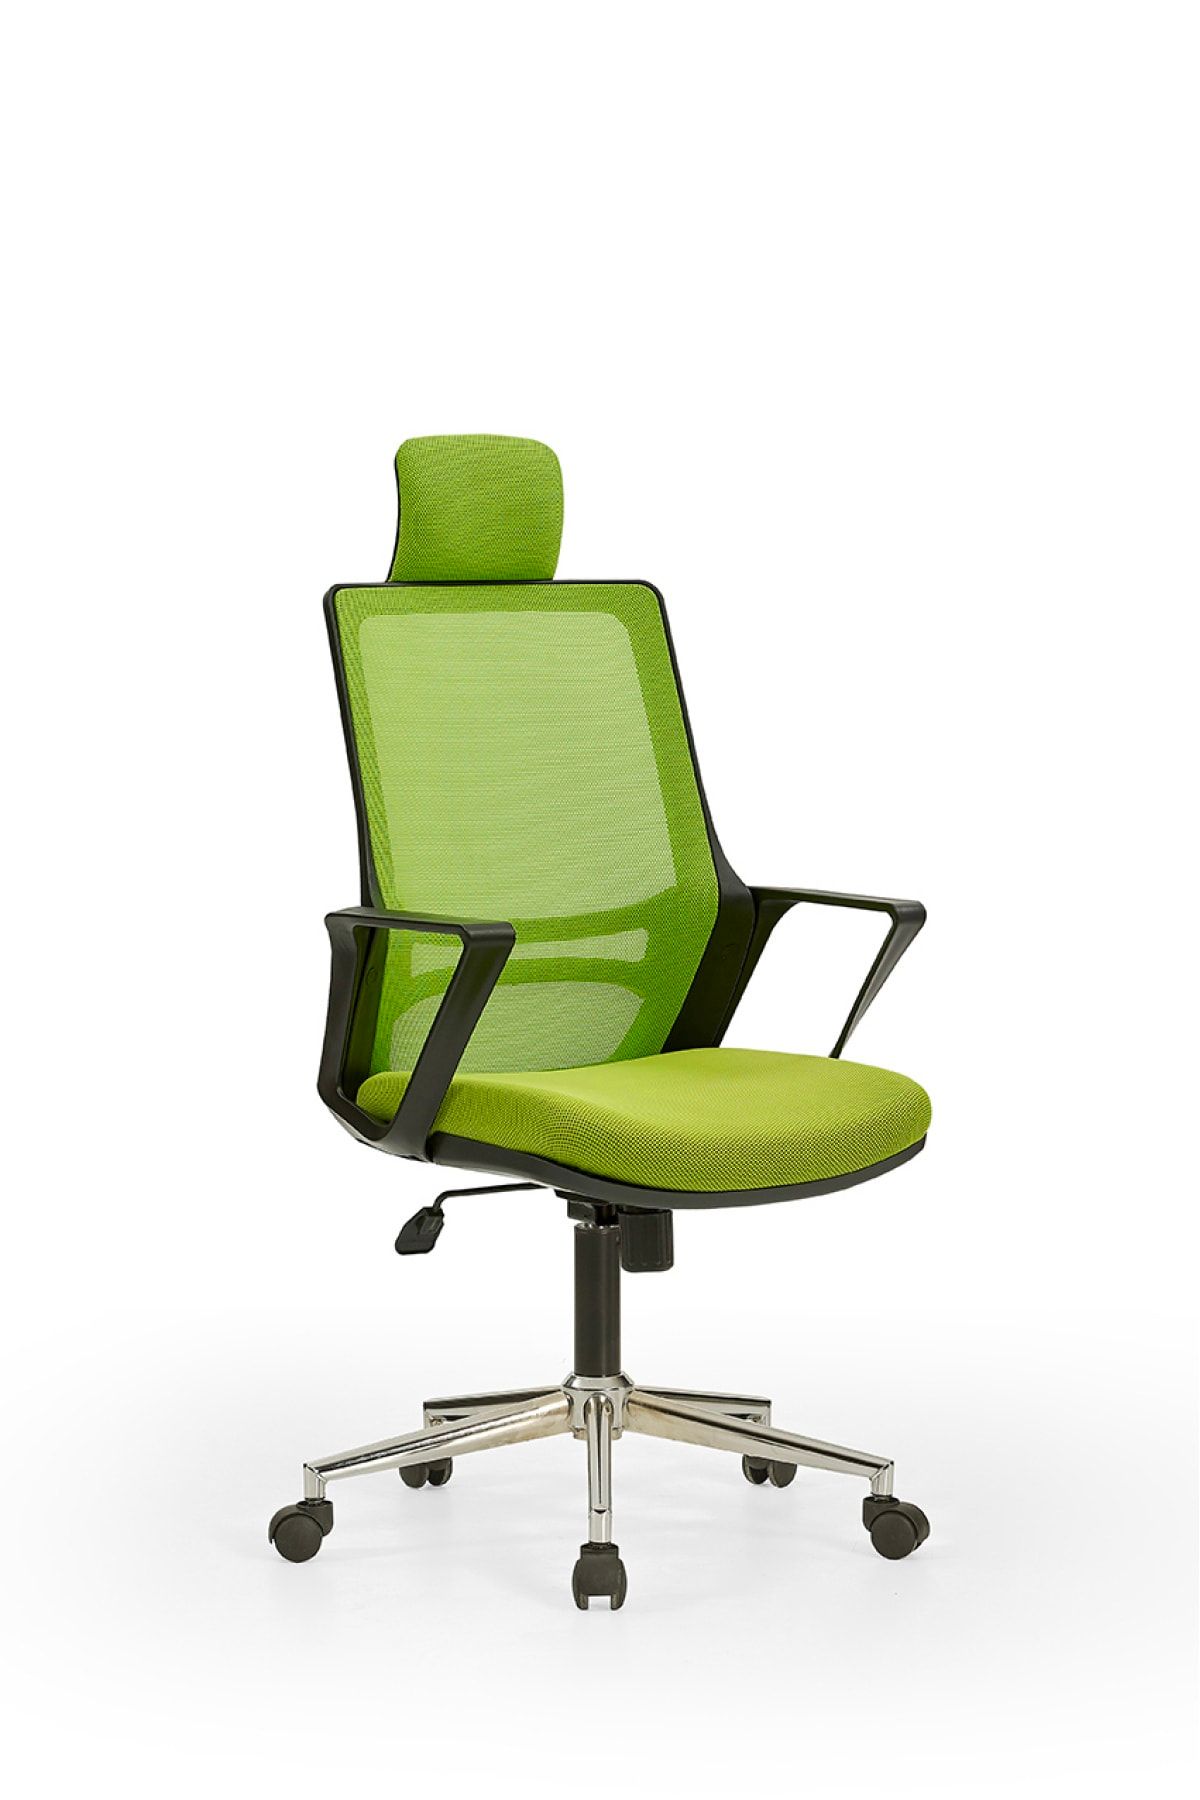 MEHMET YAREN BURO Arya1 Bilgisayar Koltuğu - Ofis - Müdür - Büro - Çalışma Sandalyesi Yeşil Renk Krom Ayaklı